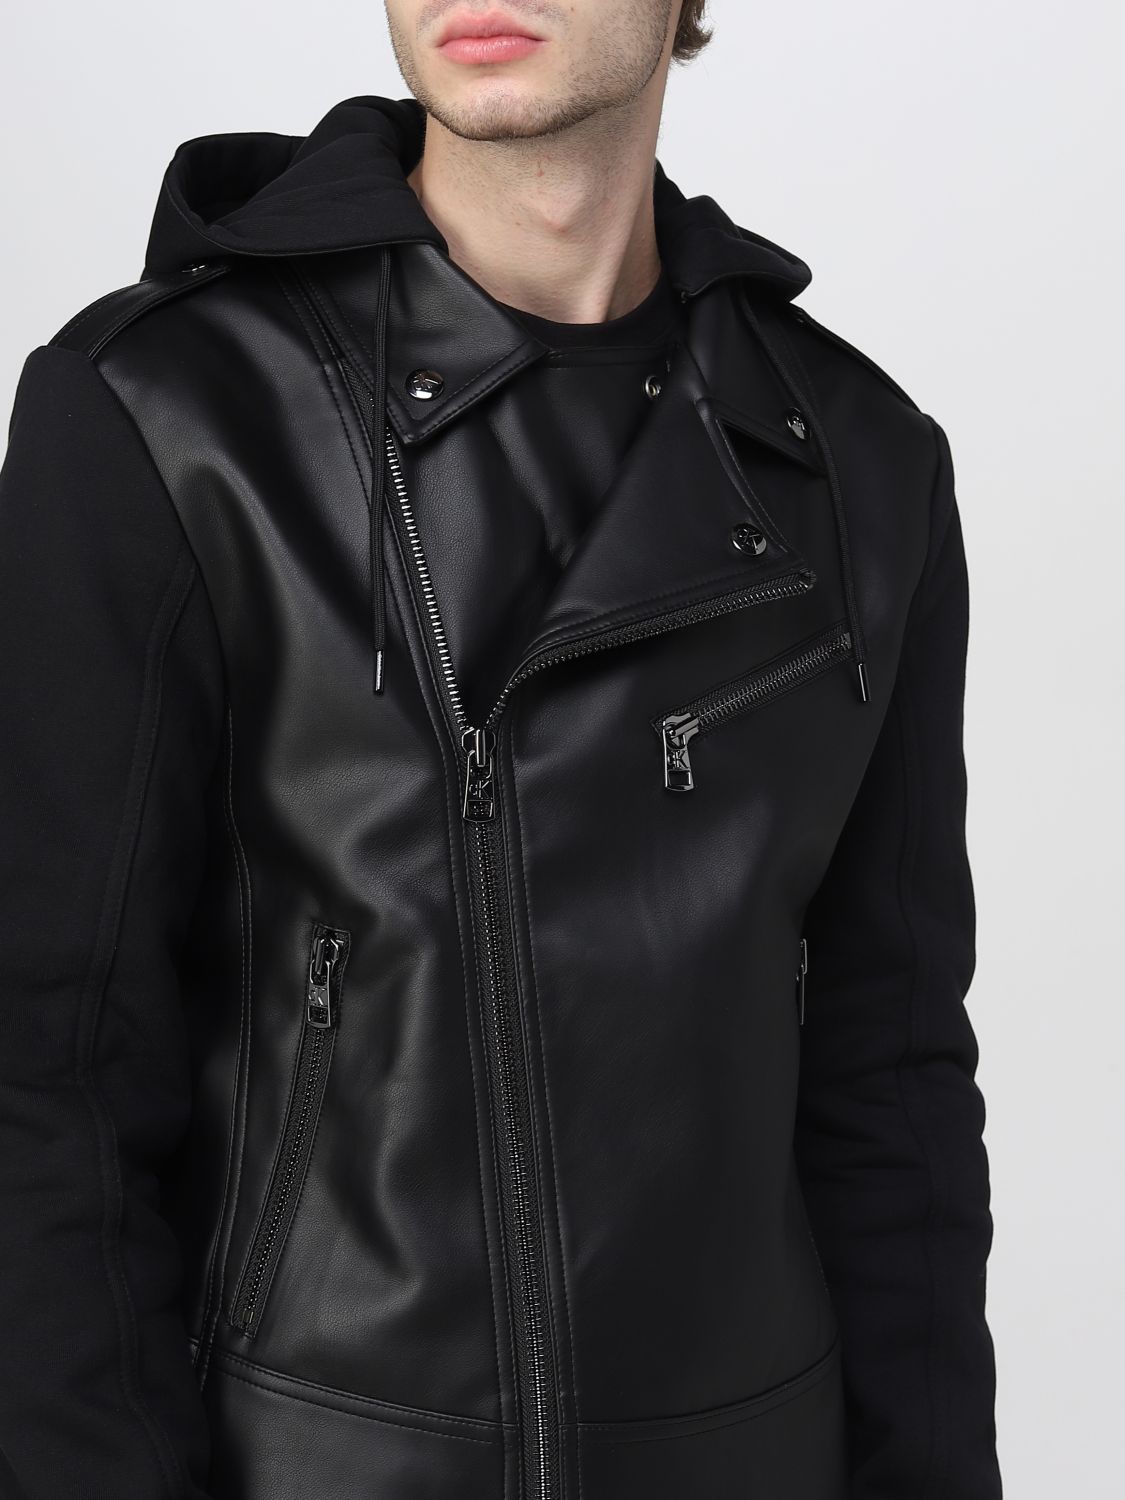 CALVIN KLEIN JEANS: jacket for man - Black | Calvin Klein Jeans jacket  J30J320918 online on 